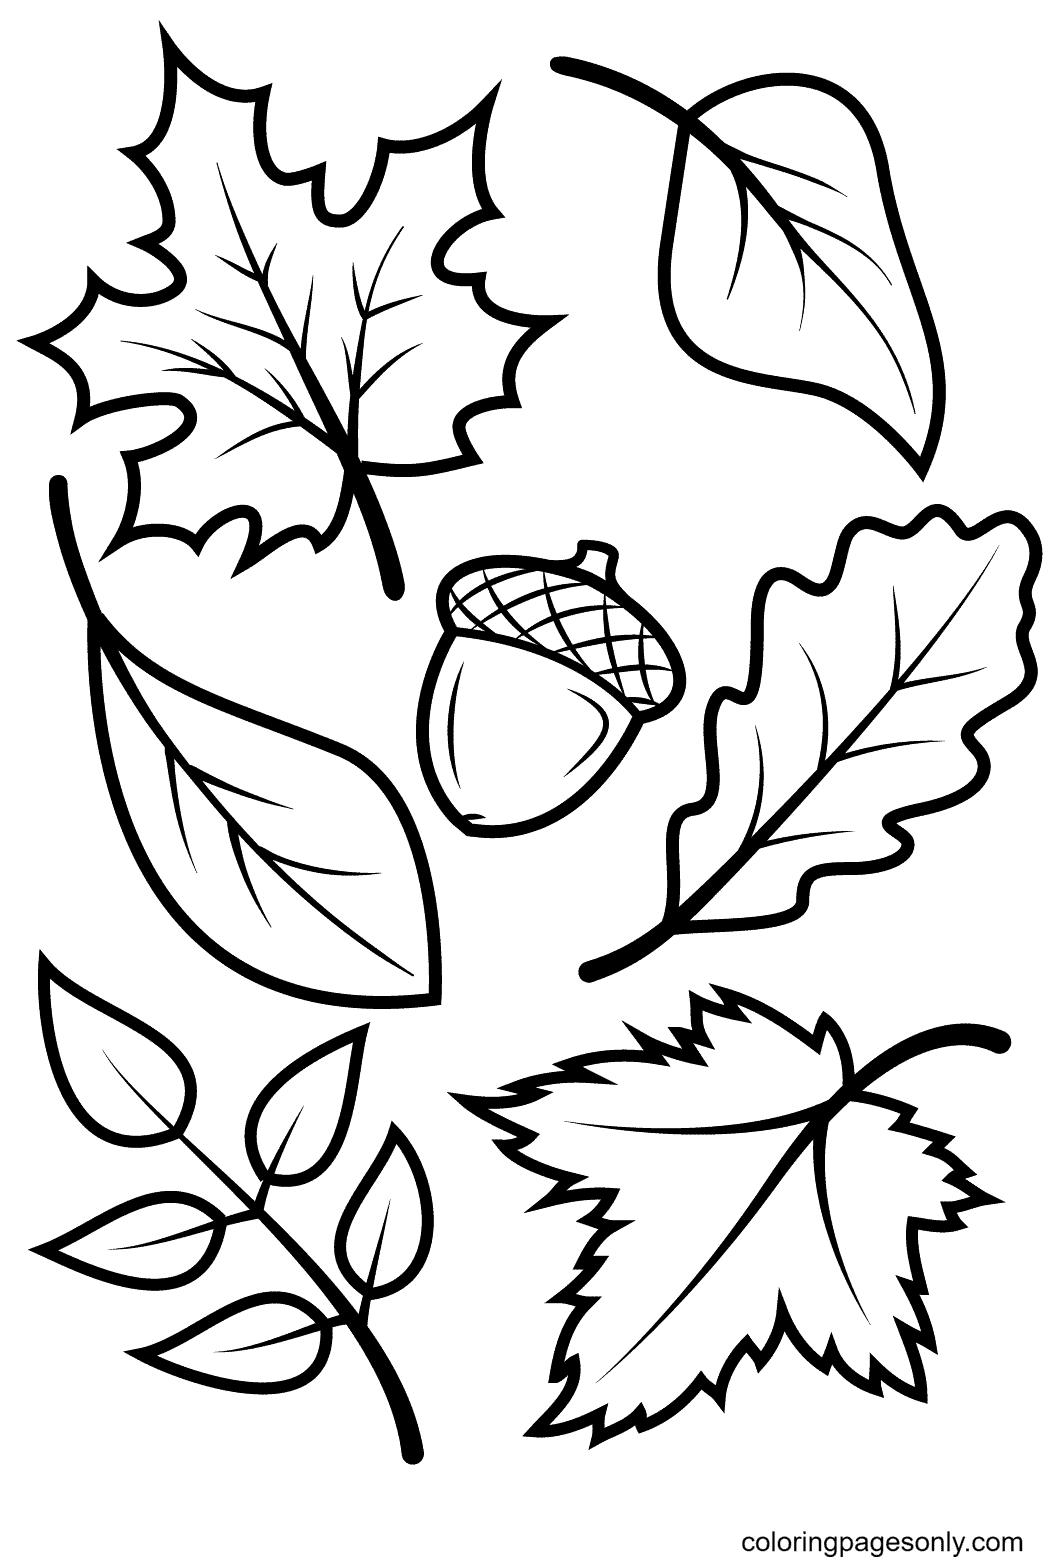 Foglie autunnali e ghianda dalle foglie autunnali